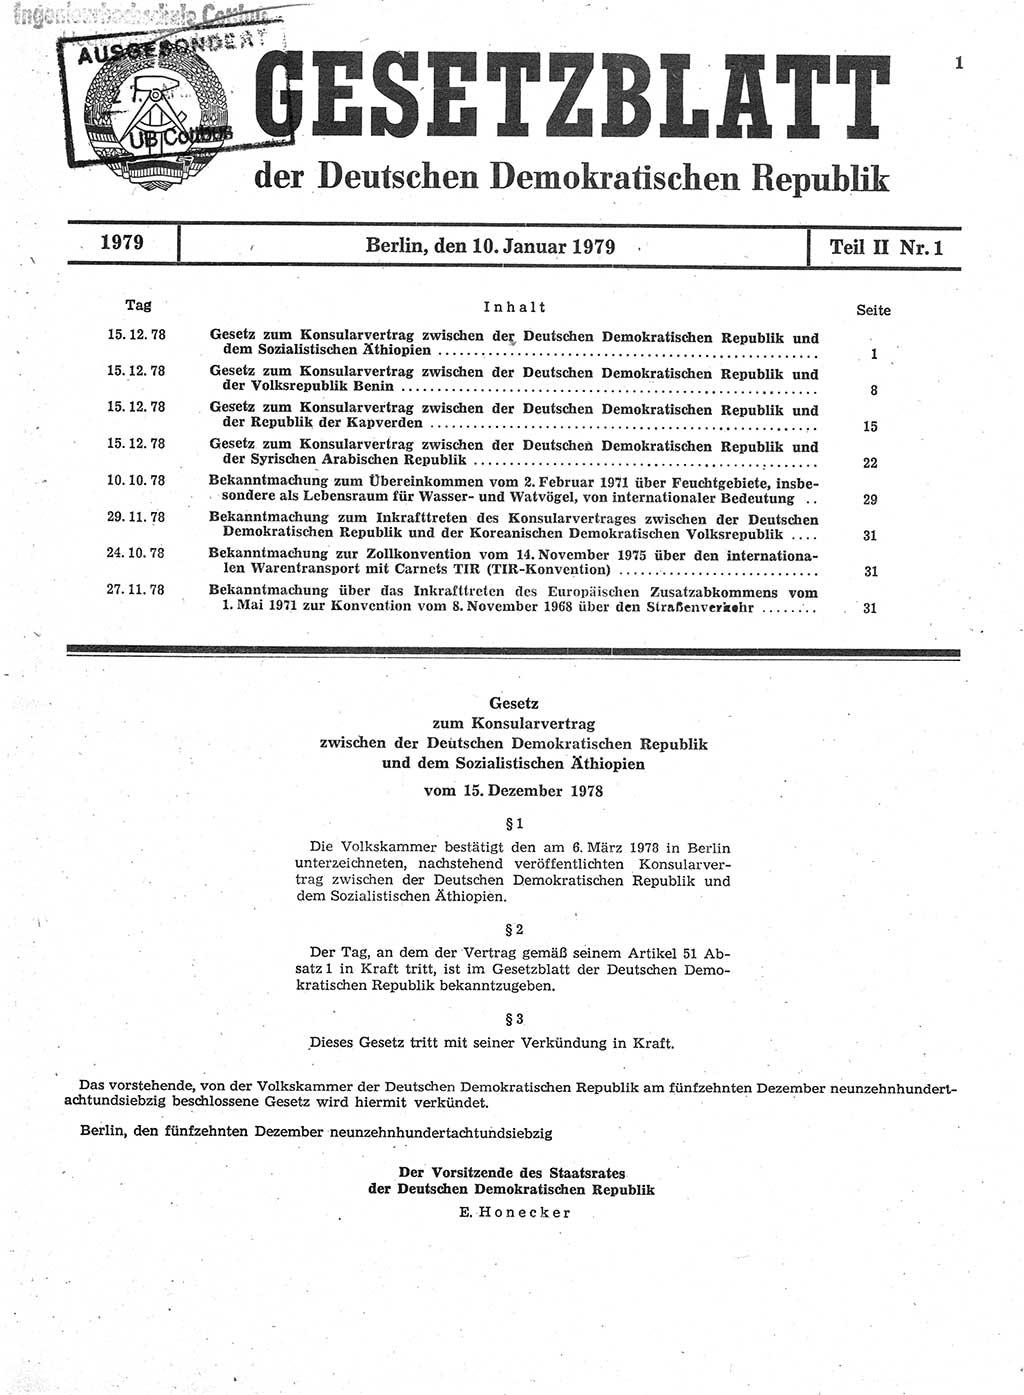 Gesetzblatt (GBl.) der Deutschen Demokratischen Republik (DDR) Teil ⅠⅠ 1979, Seite 1 (GBl. DDR ⅠⅠ 1979, S. 1)